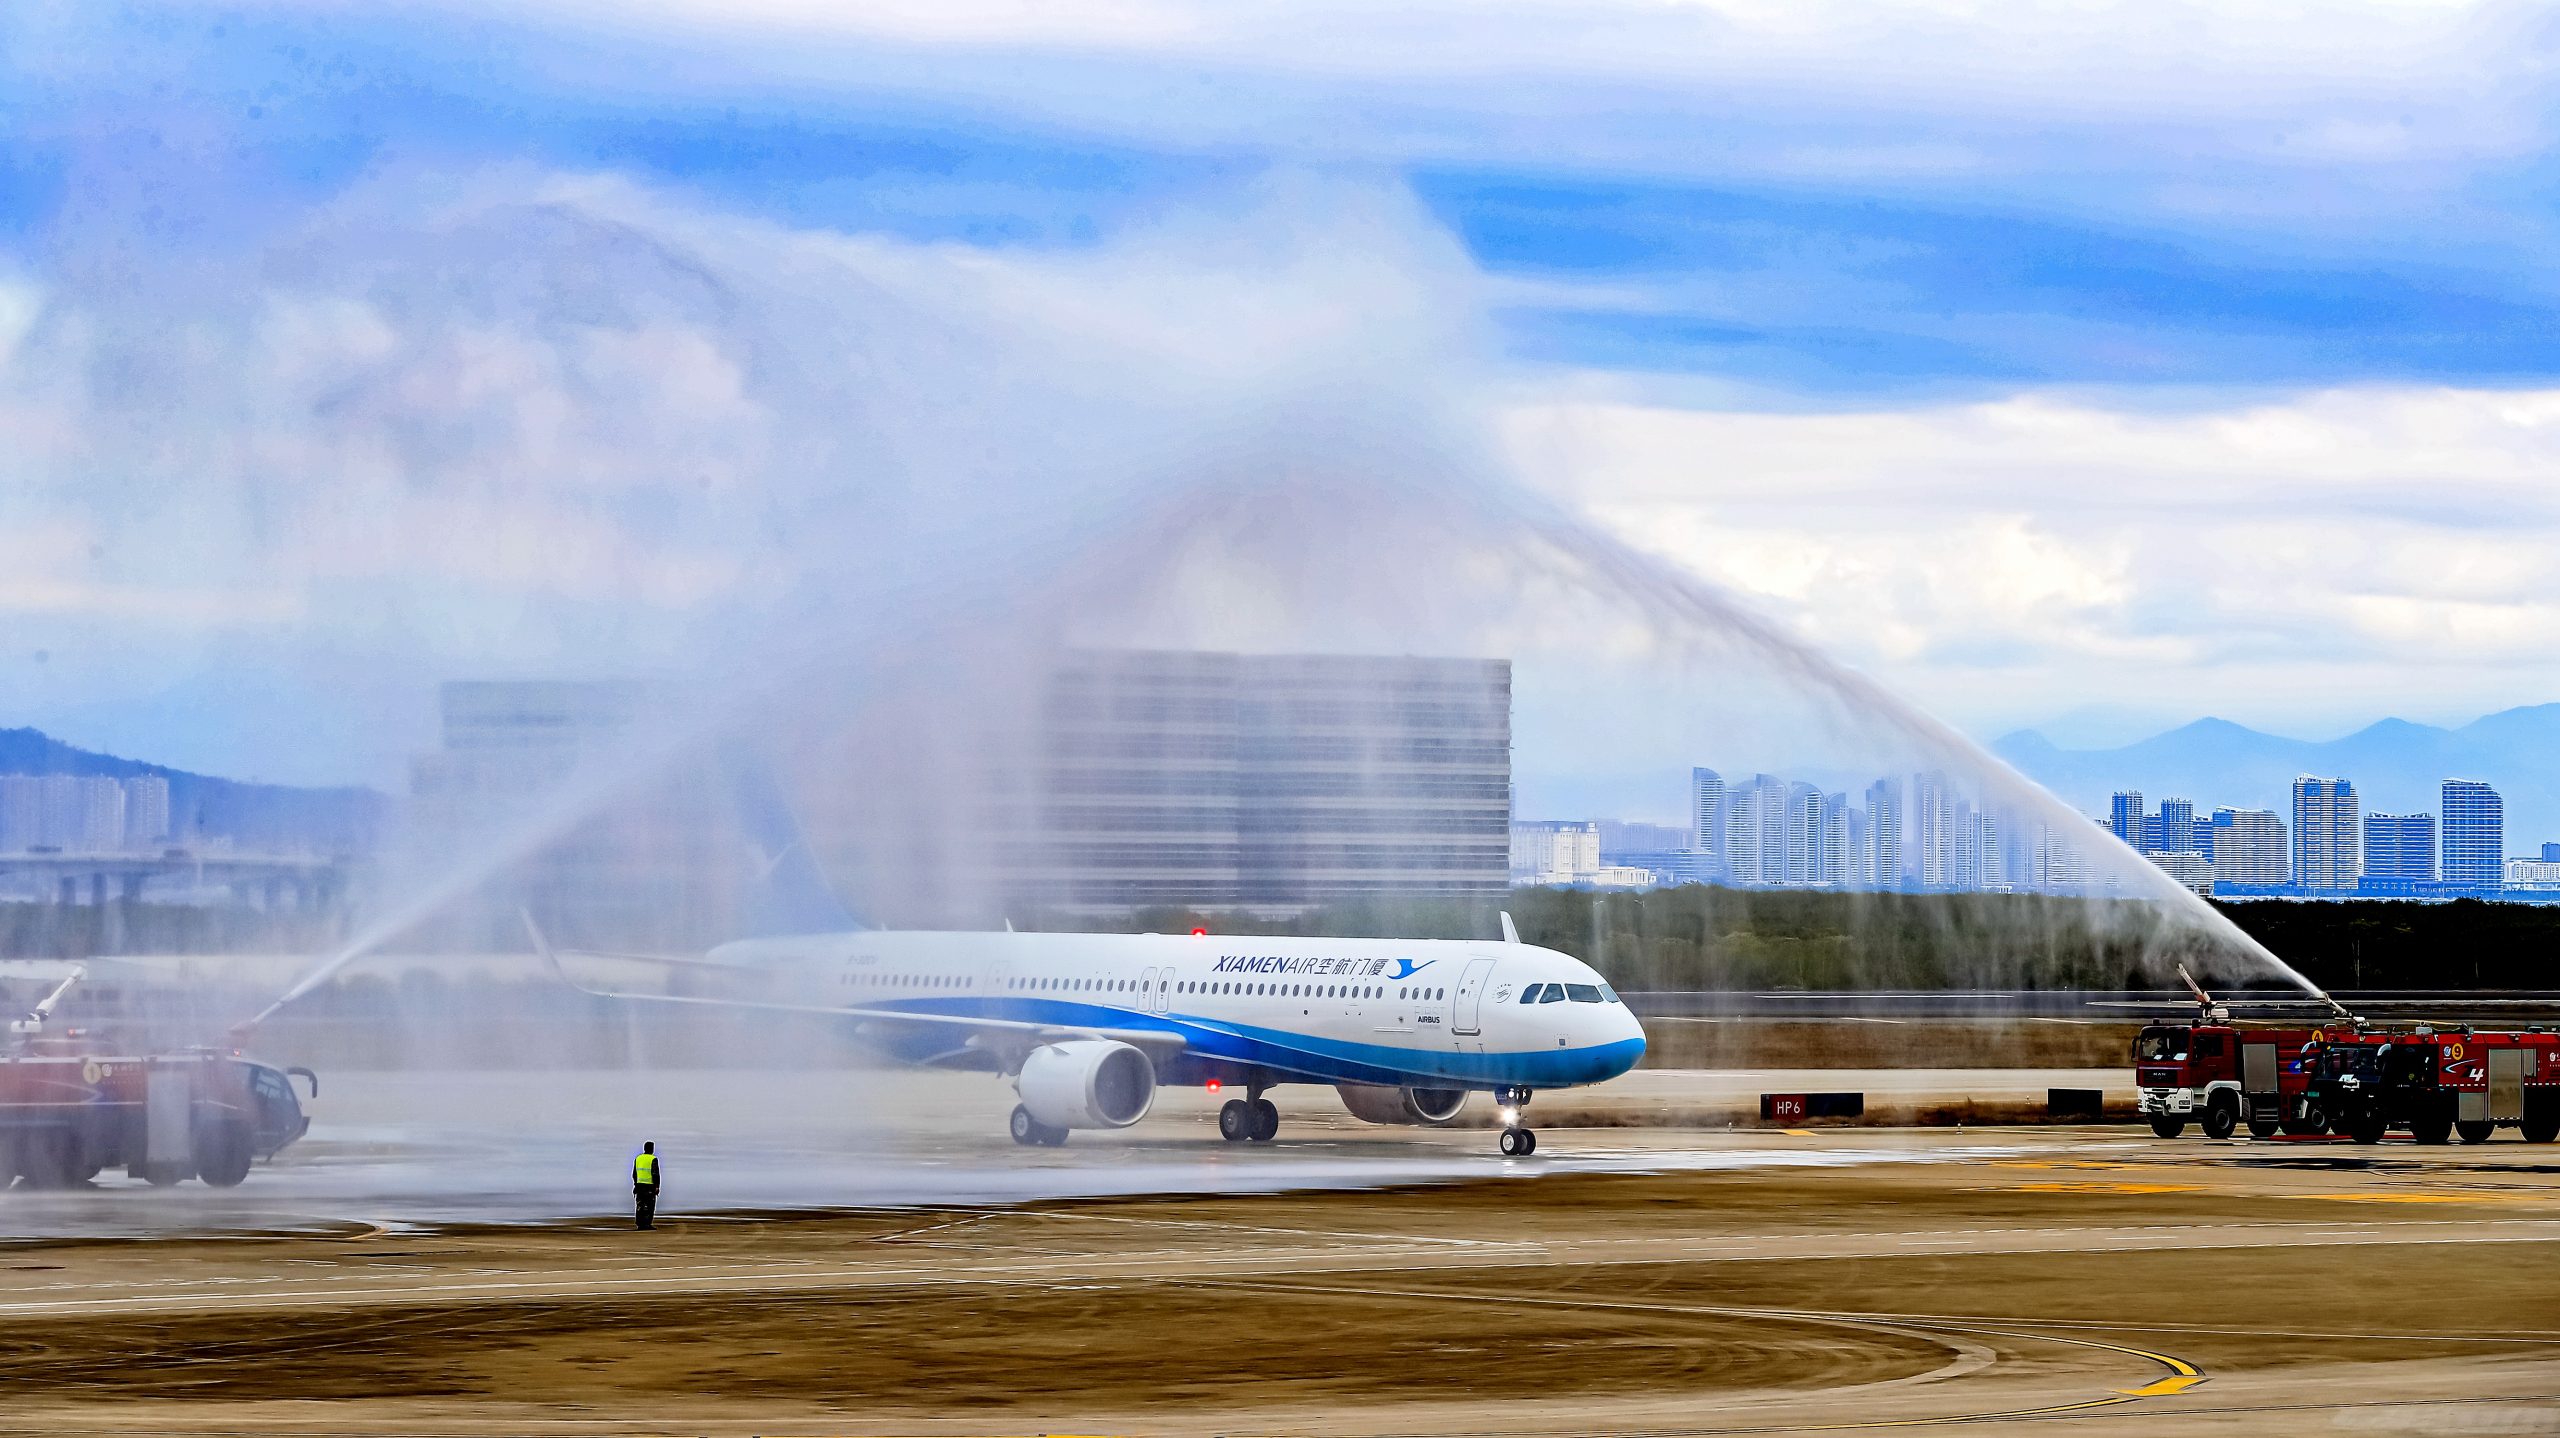 厦门航空接收其首架空客A321neo飞机 成为空客新运营商